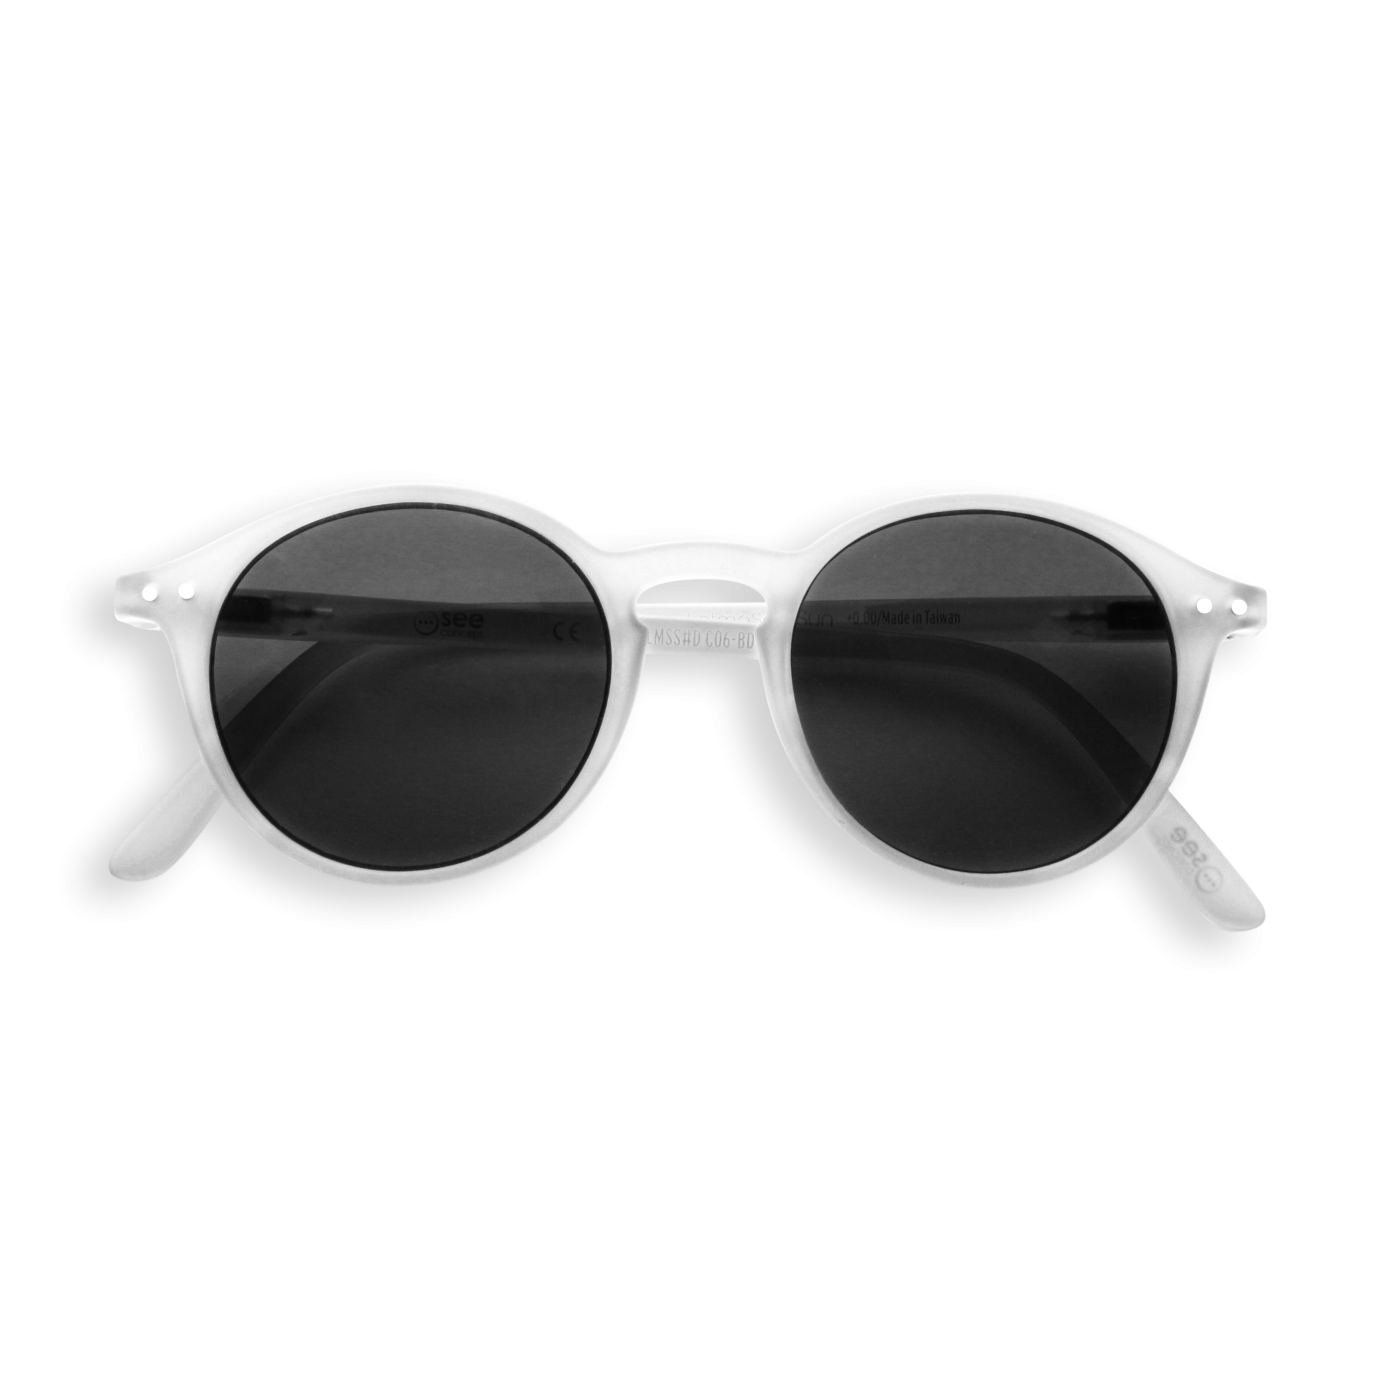 Style Fashion Sunglasses Goggles Glases Retro Clipart